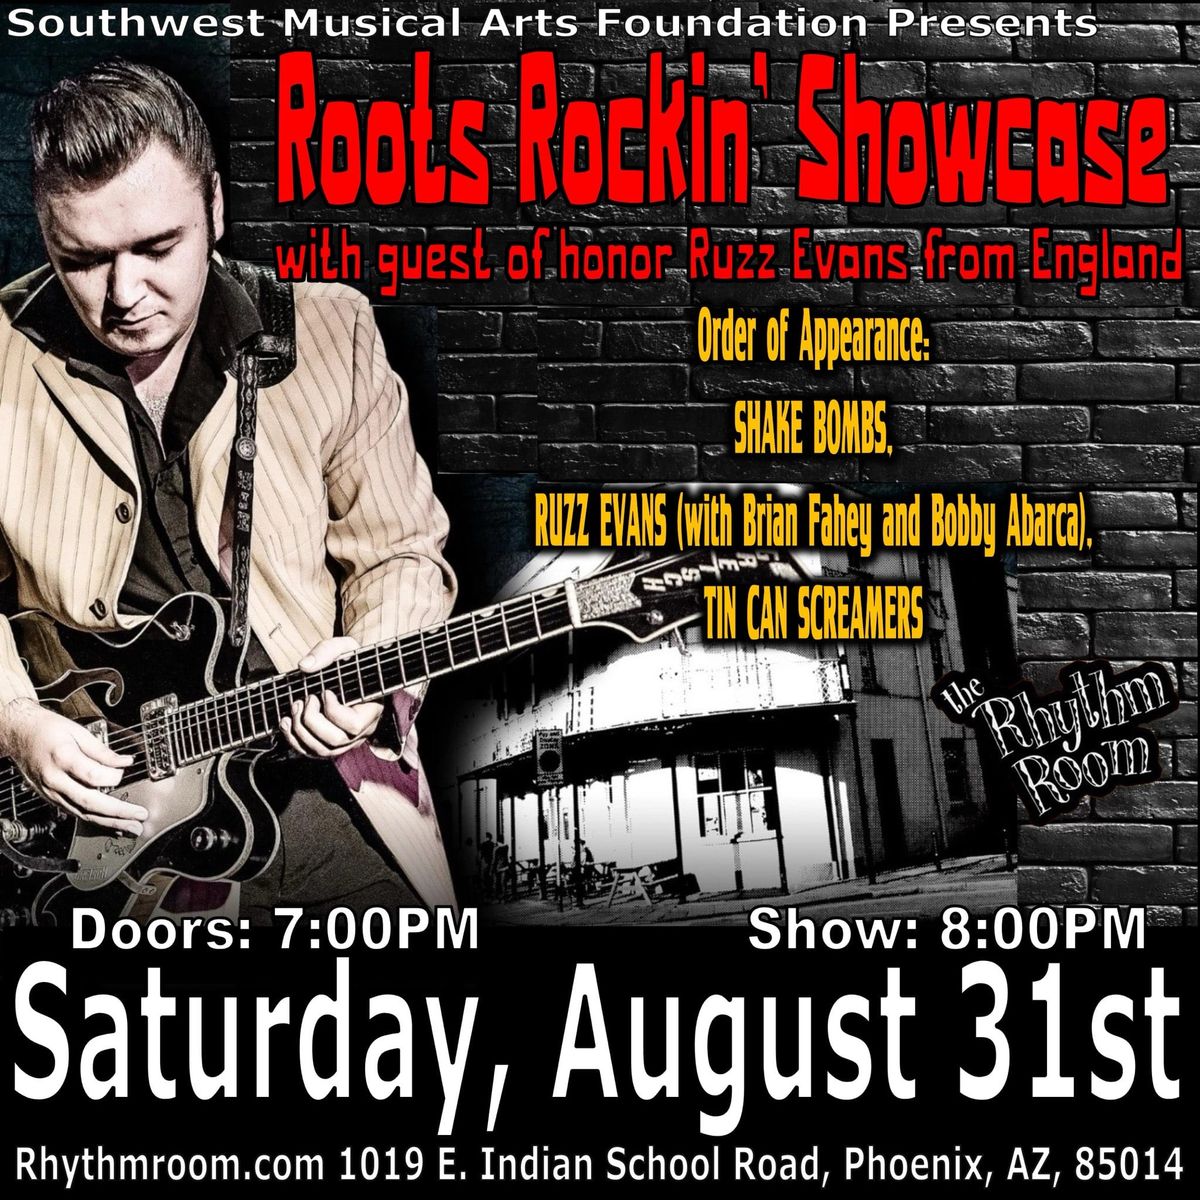 Roots Rockin' Showcase featuring Ruzz Evans! 